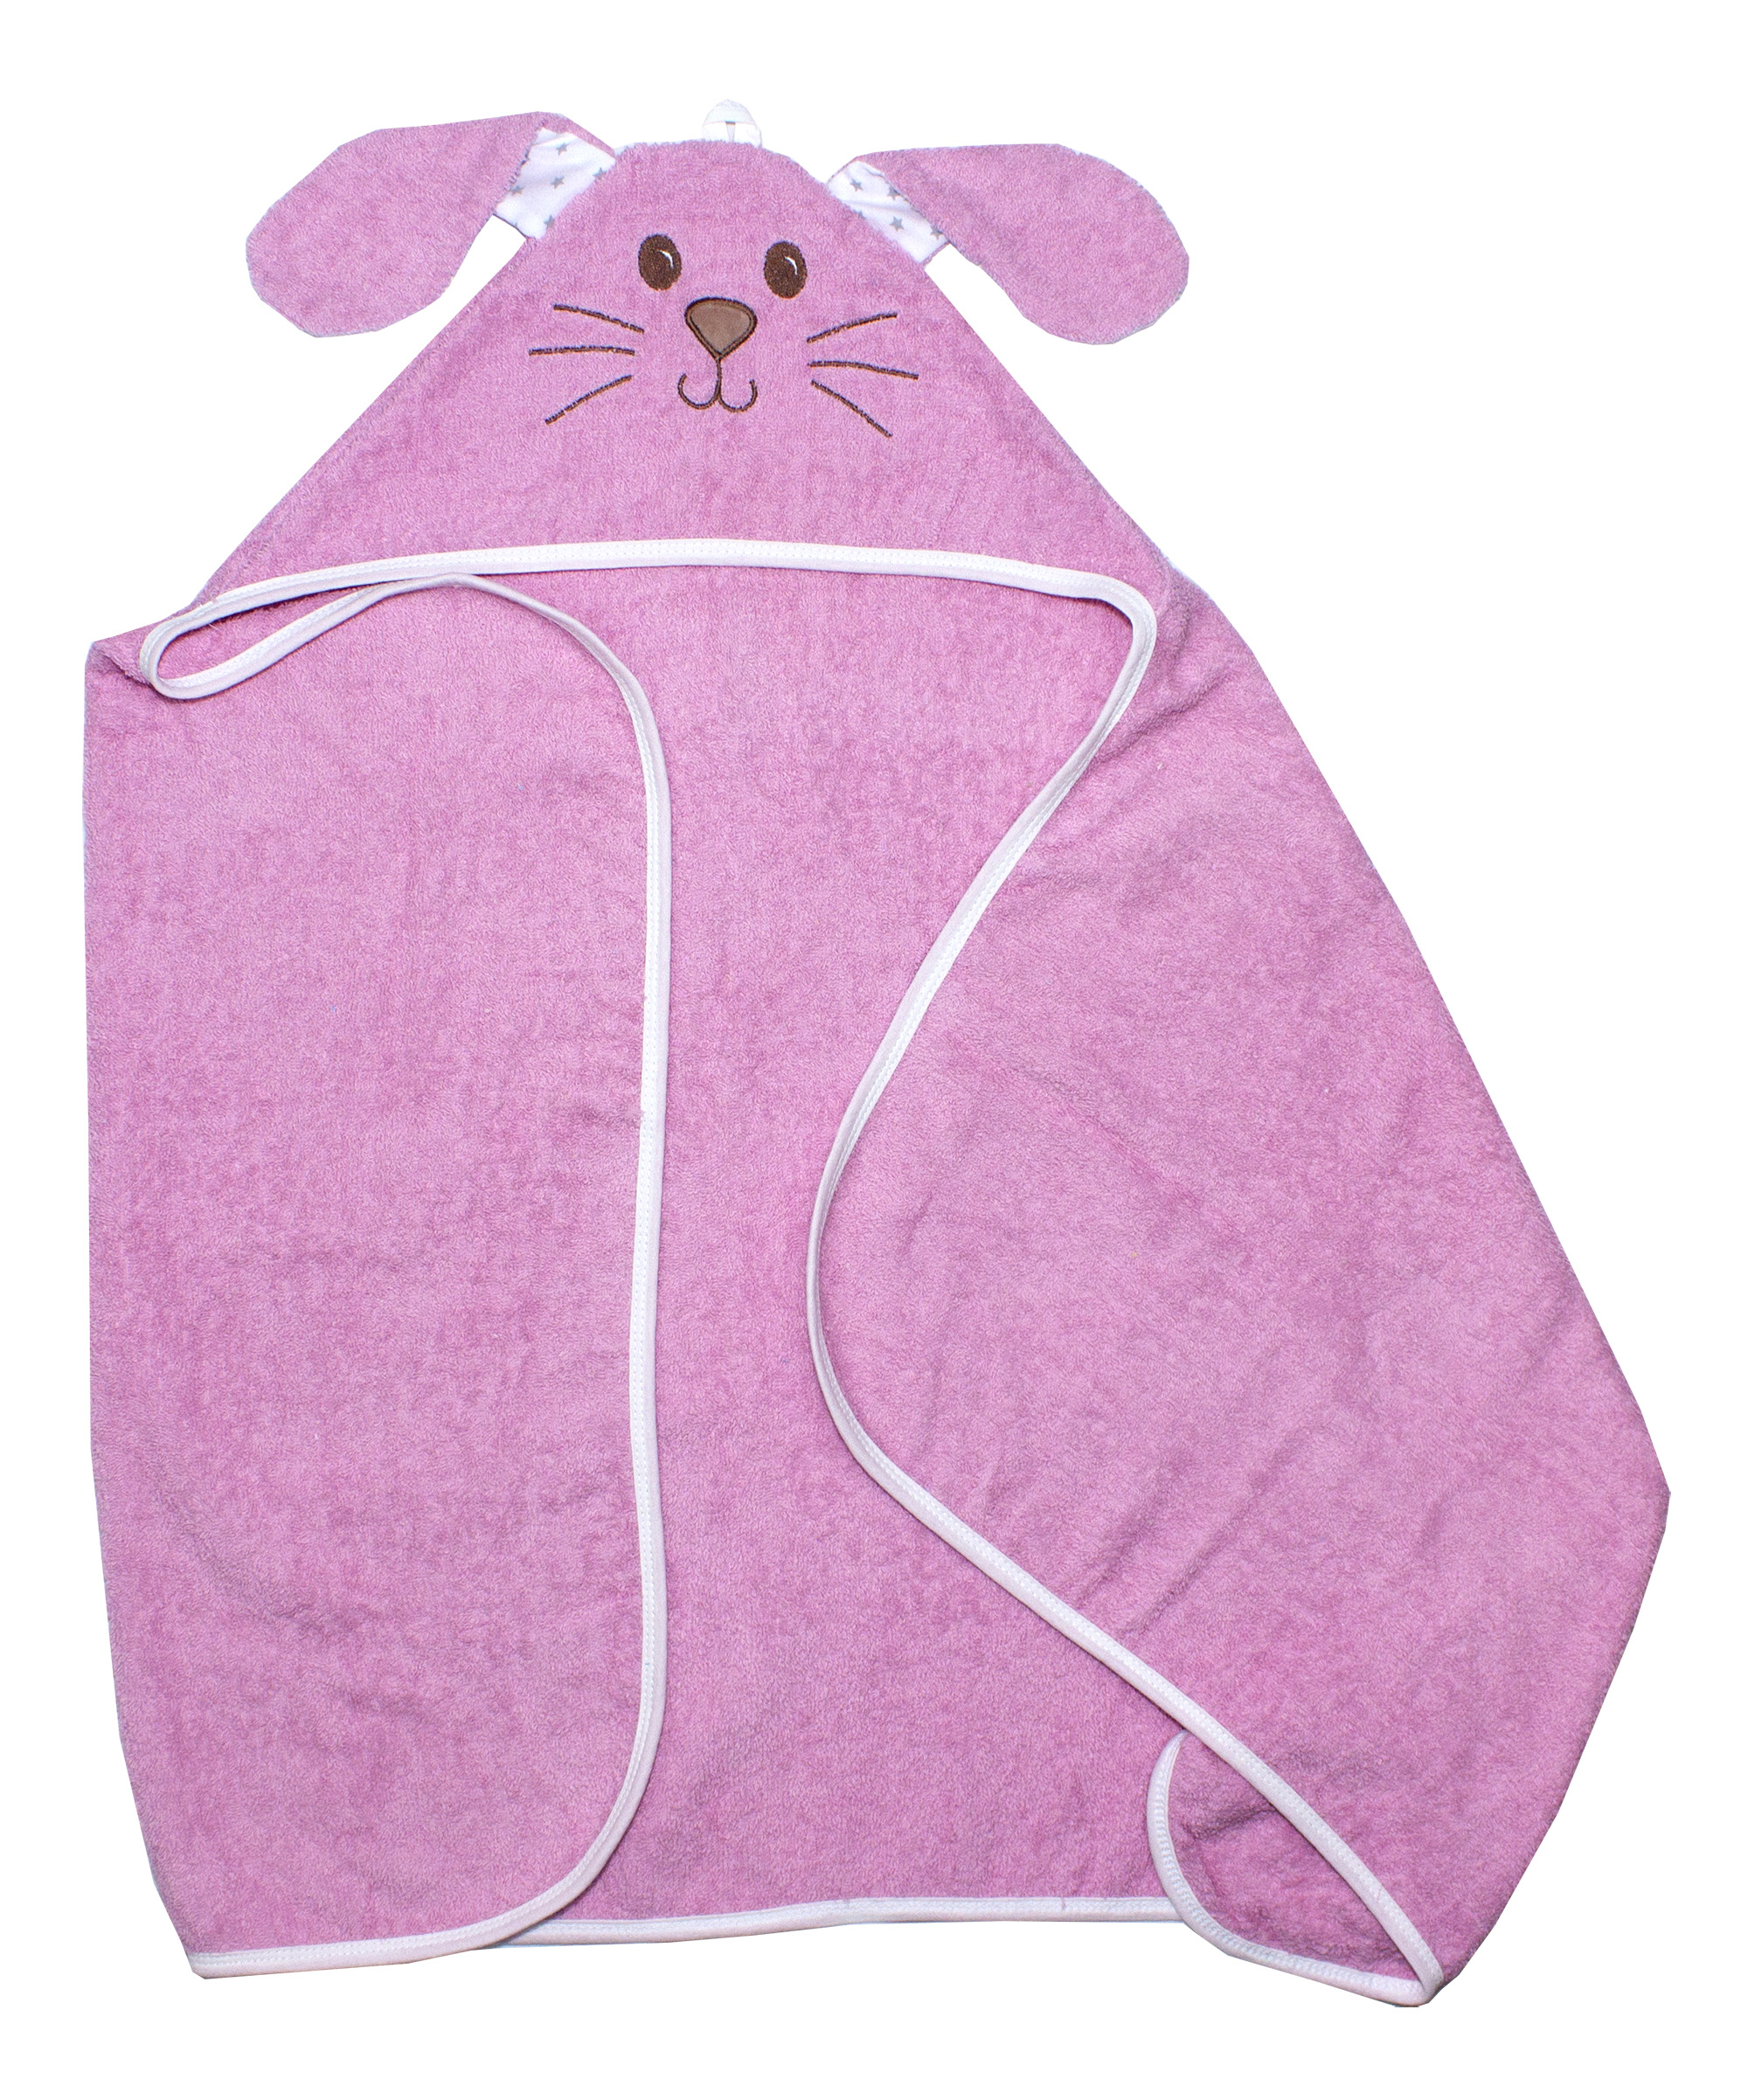 Полотенце-уголок Осьминожка махровое с вышивкой 125х65см К23/2 - розовый Зайчик набор для полотенце уголок рукавица